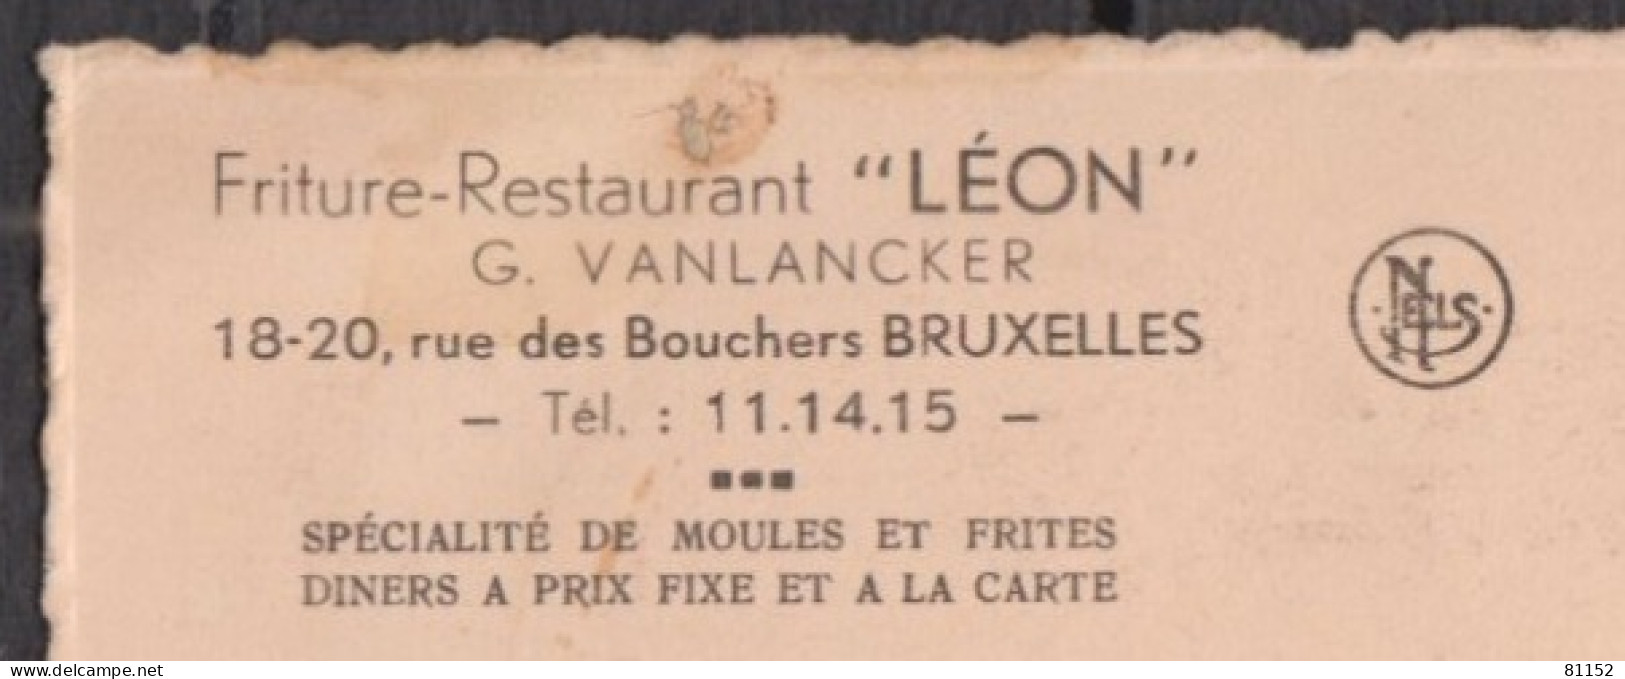 Belgique   BRUXELLES - Friture-Restaurant LEON - Prop. Honoré VANLANCKER-REUMONT    Non écrite - Restaurants